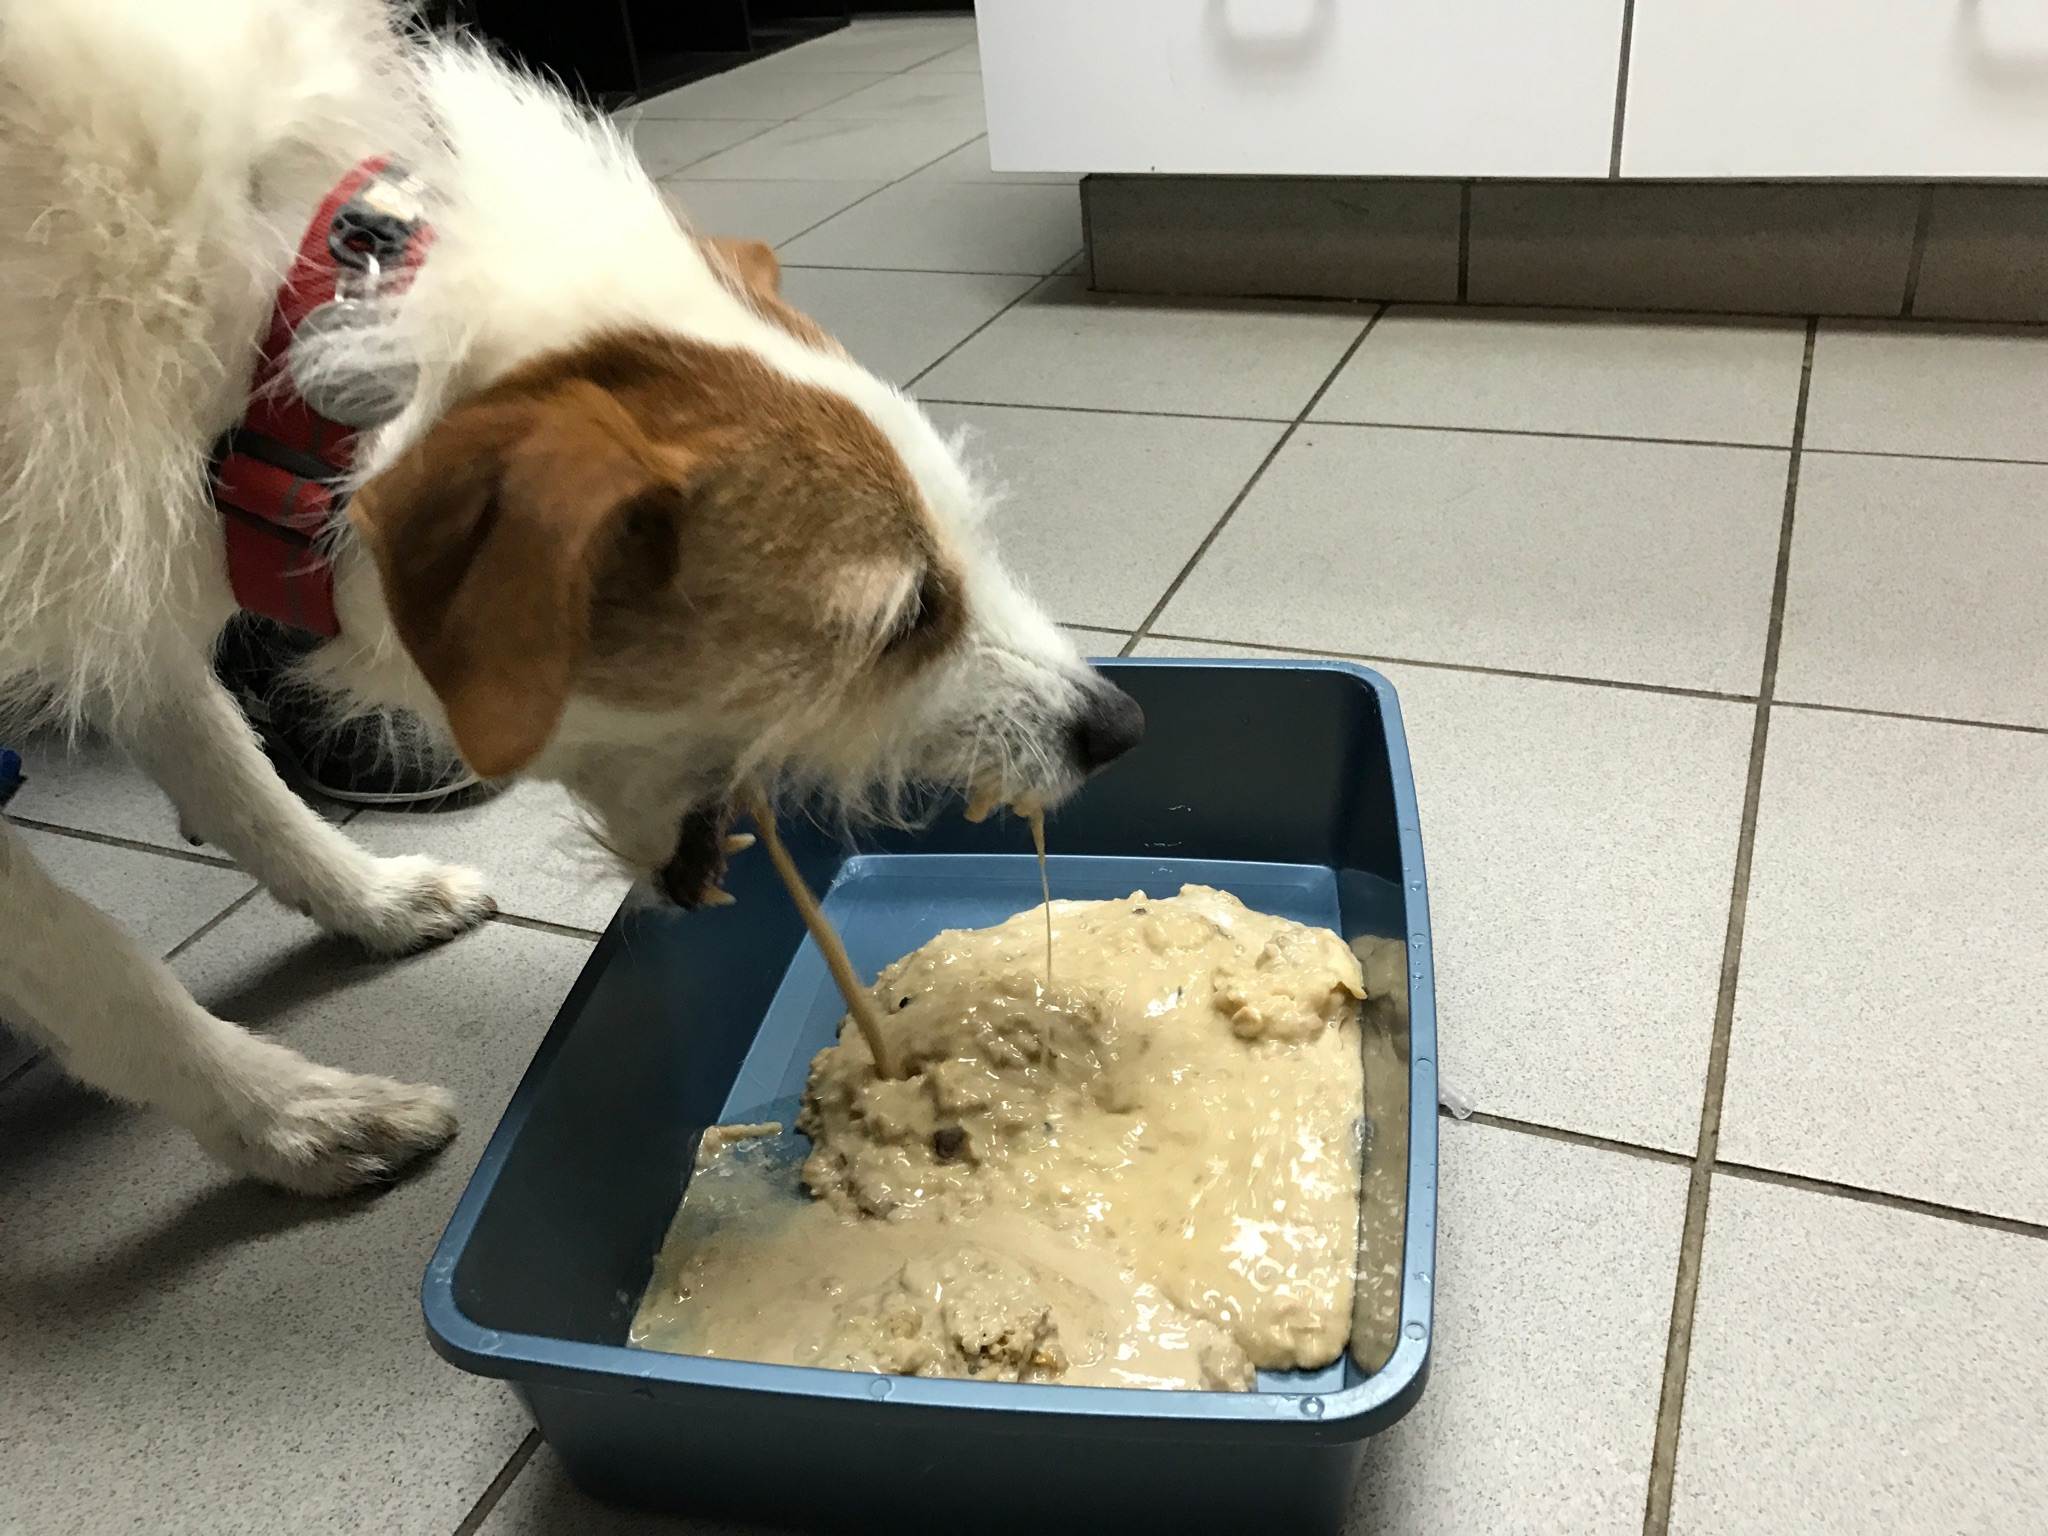 Собака вялая, отказывается от еды: причины, что делать